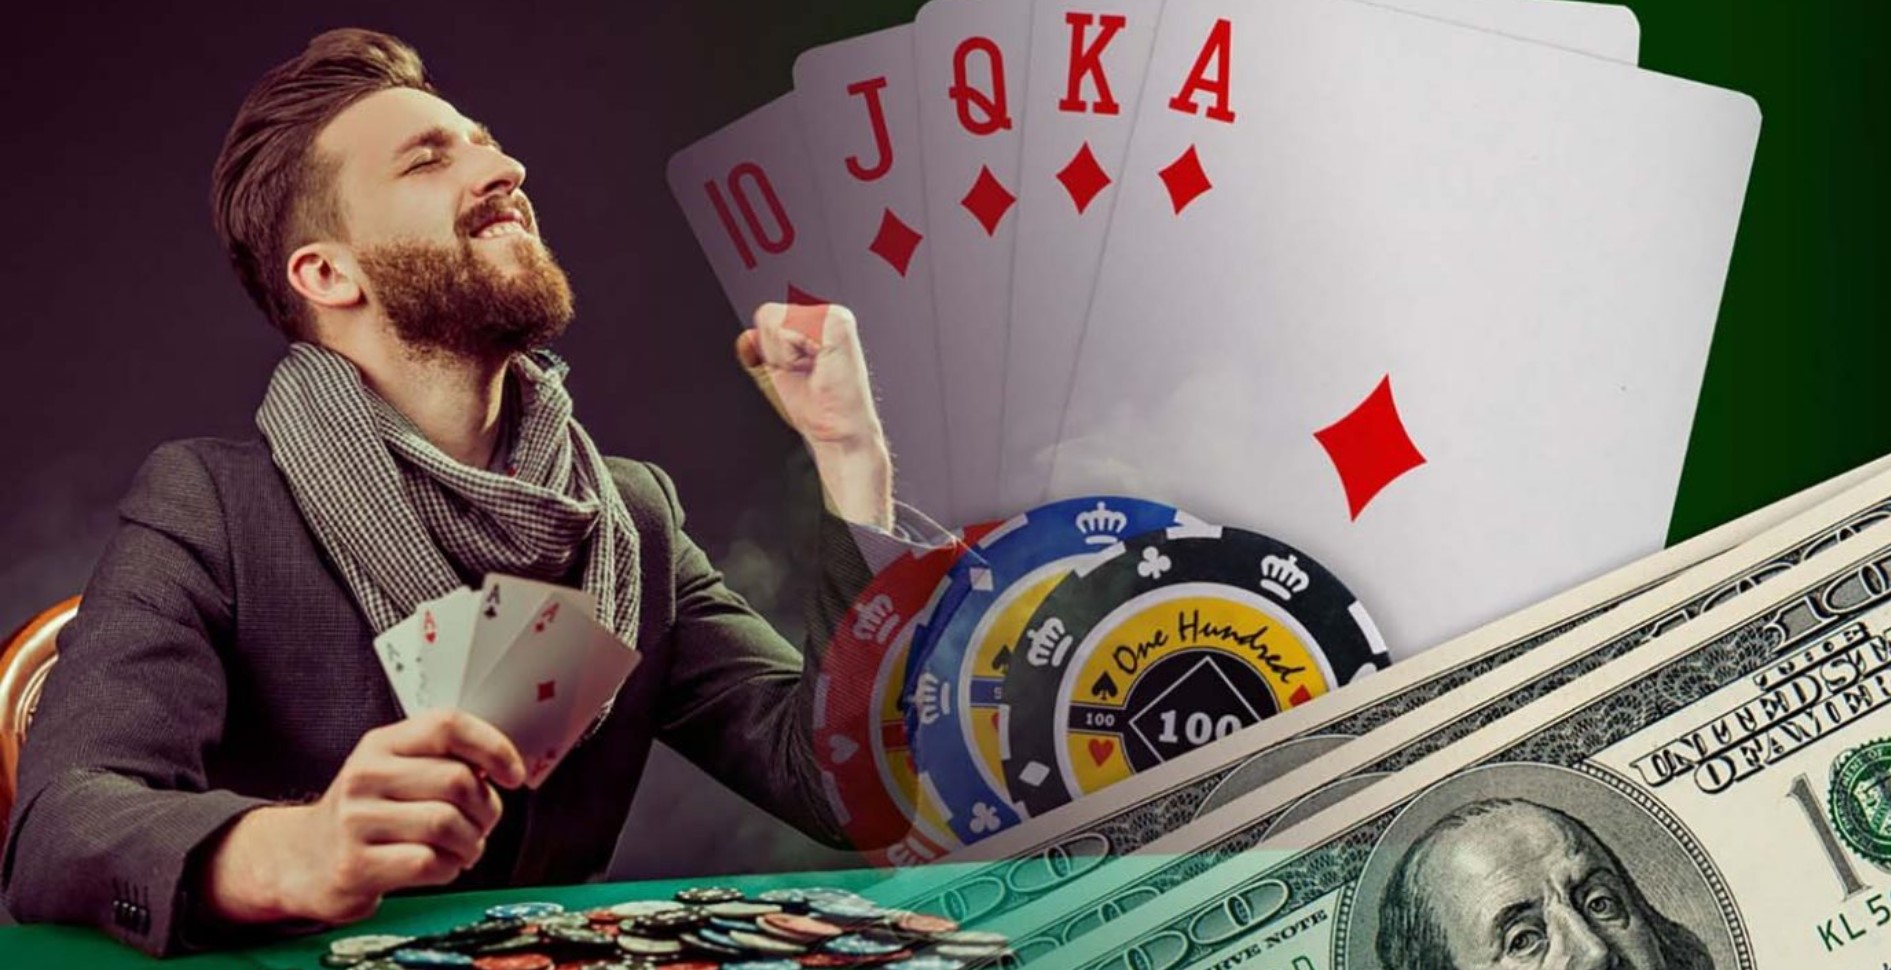 Он играть в карты и выигрывать деньги. Покер. Фишки и деньги Покер. Казино Покер. Победа в покере.